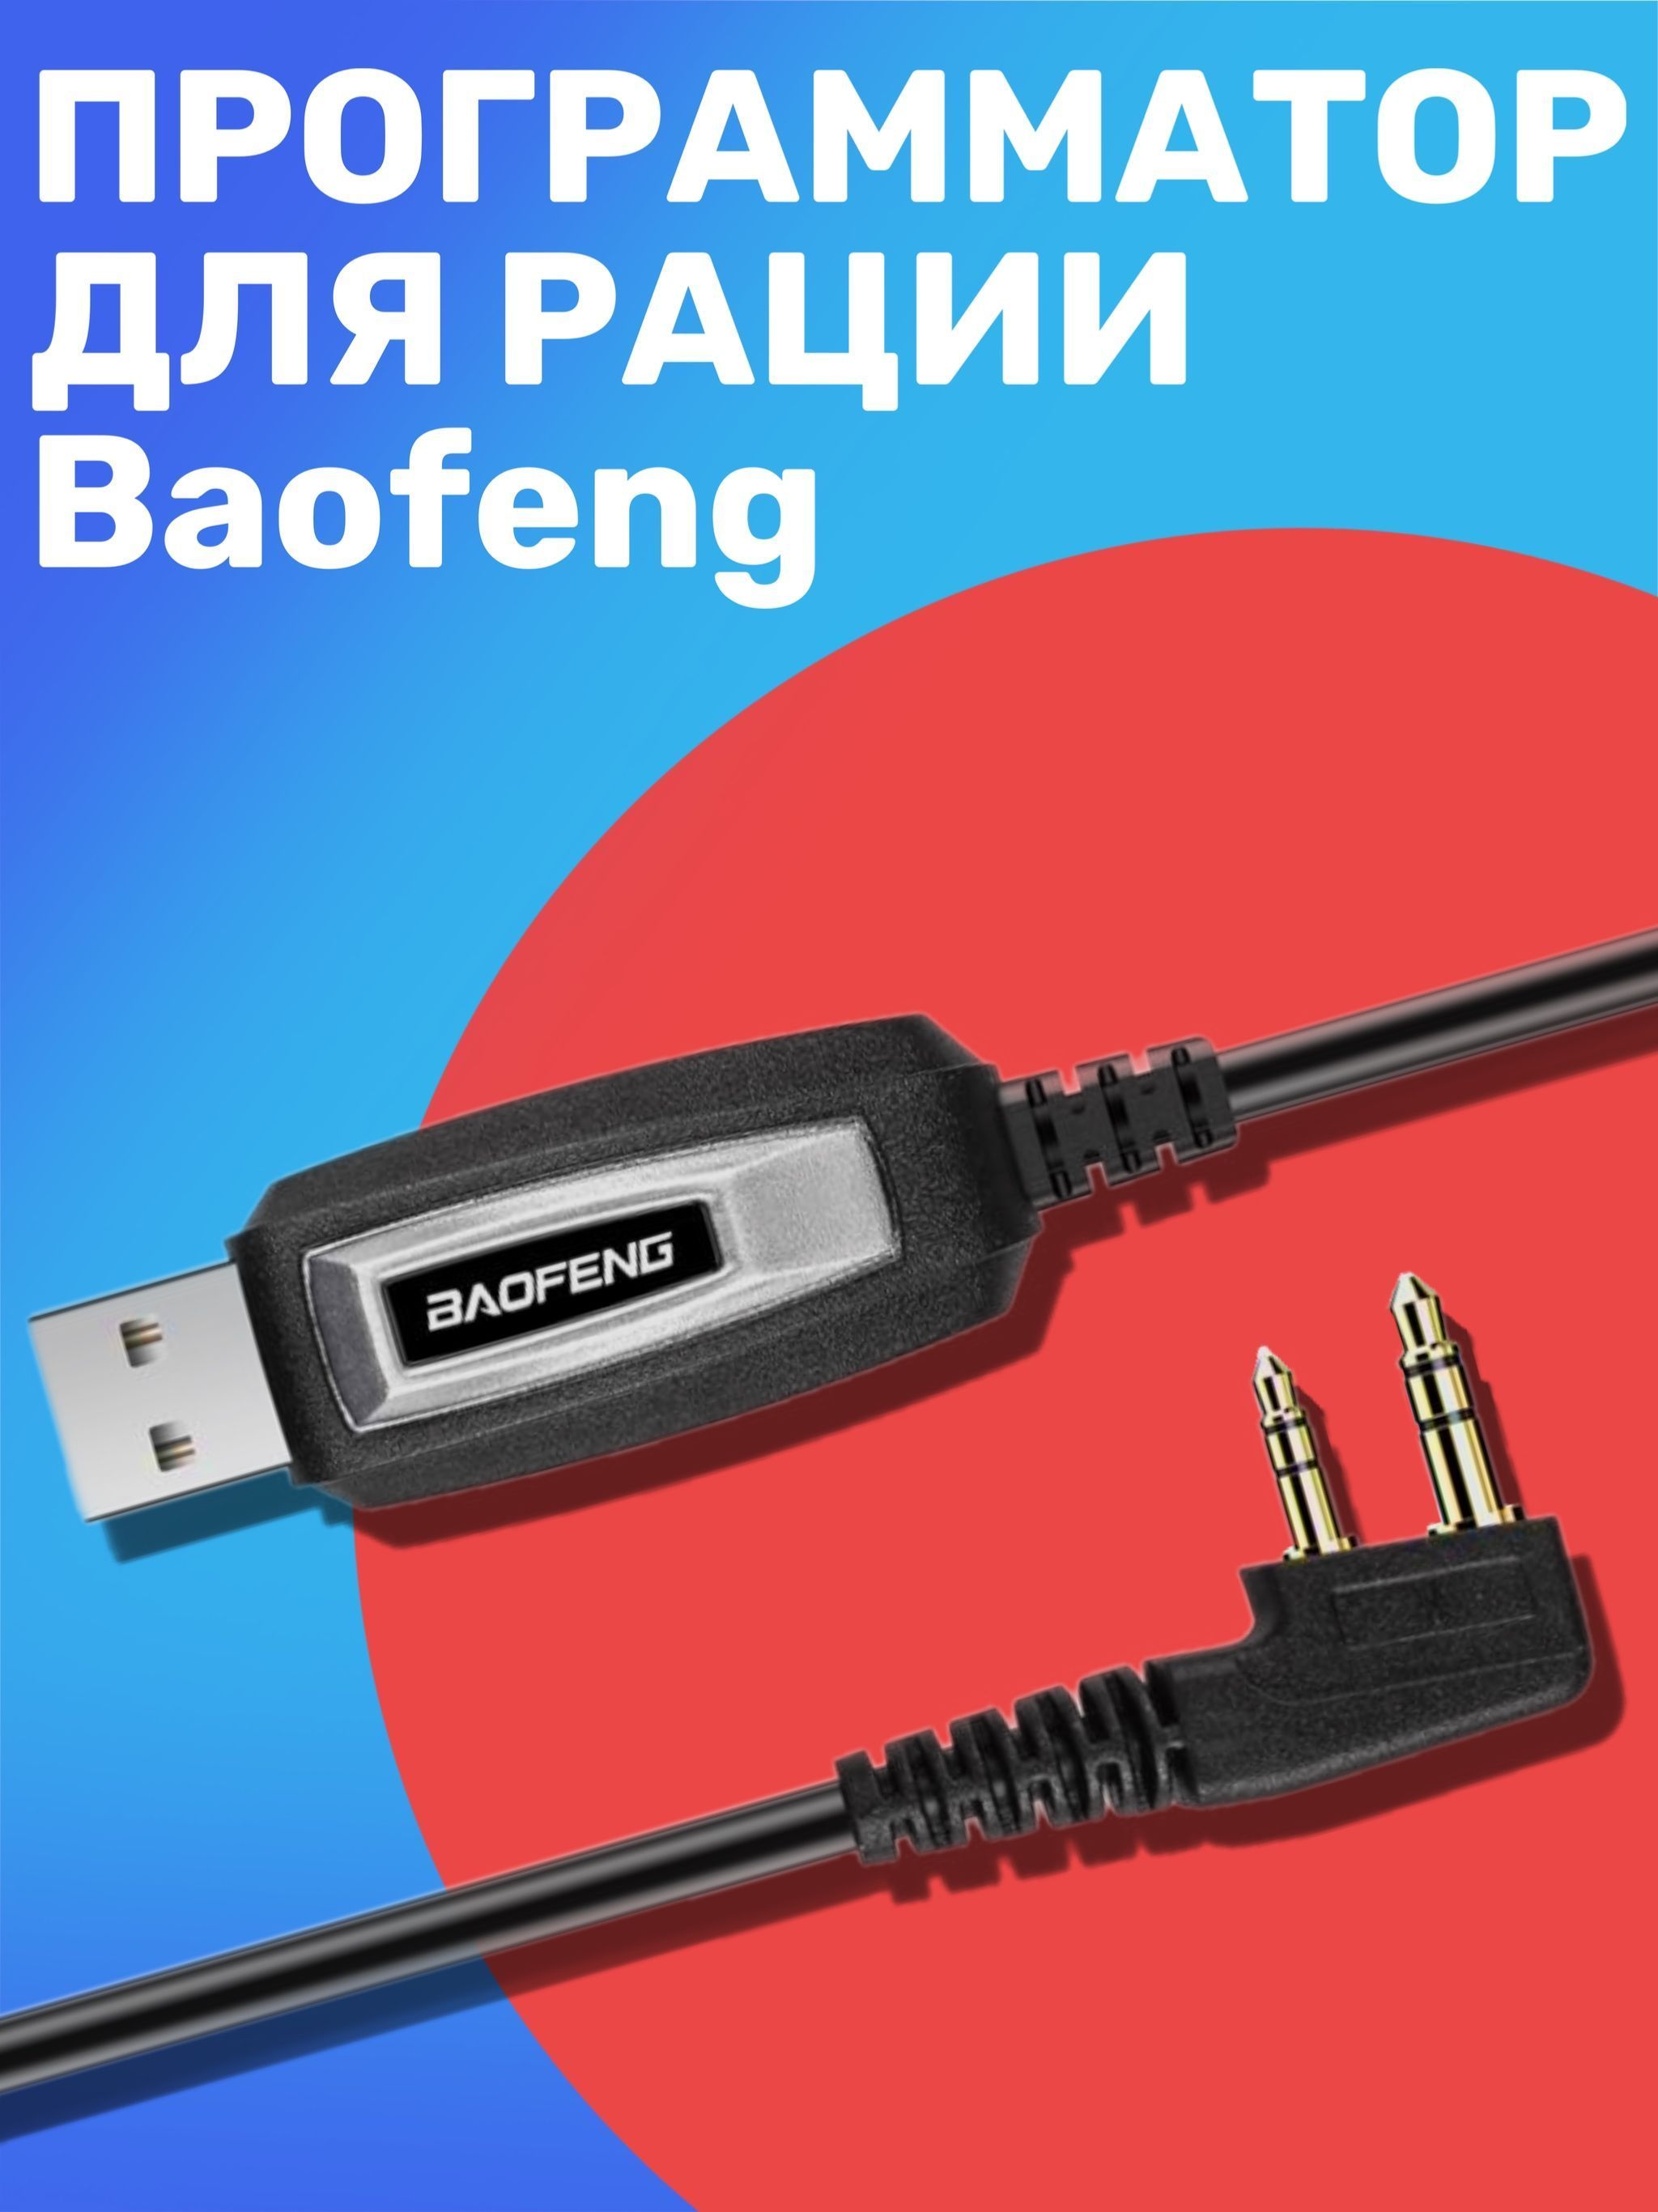 USB кабель и CD диск для программирования раций Baofeng, Kenwood, TYT и QuanSheng